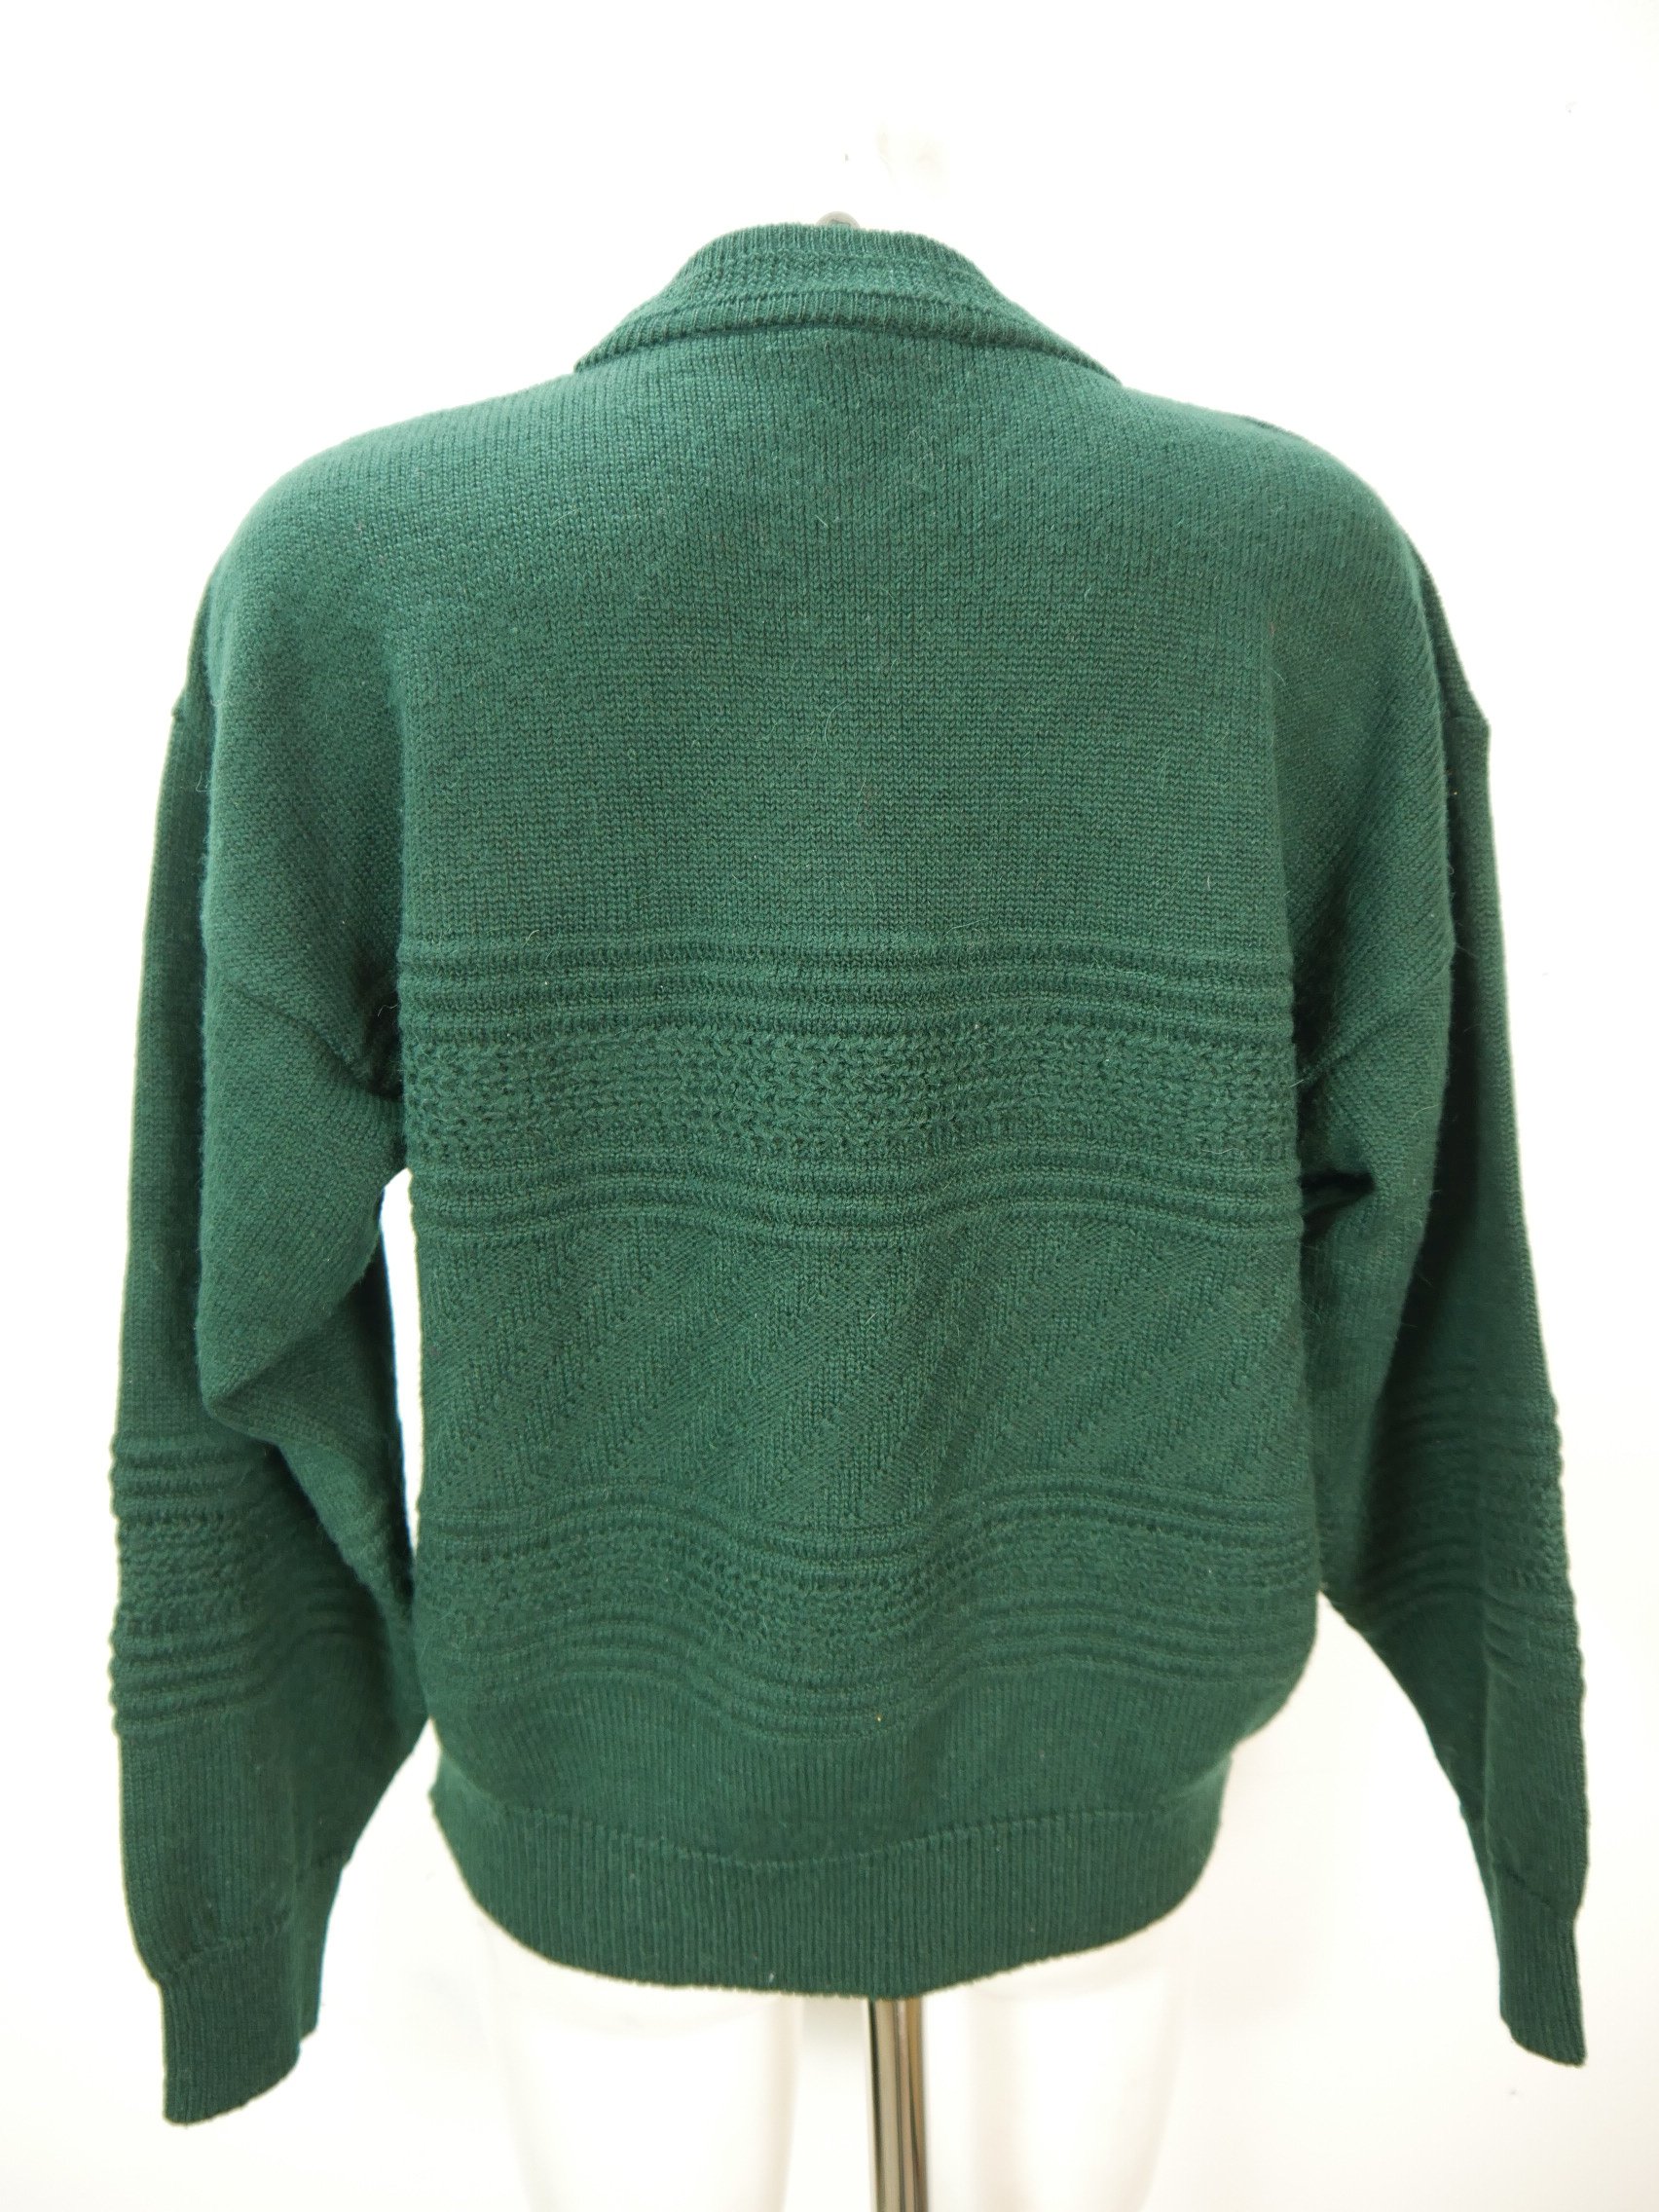 Weiß/Grün L W52 Strickjacke Rabatt 85 % HERREN Pullovers & Sweatshirts Stricken 